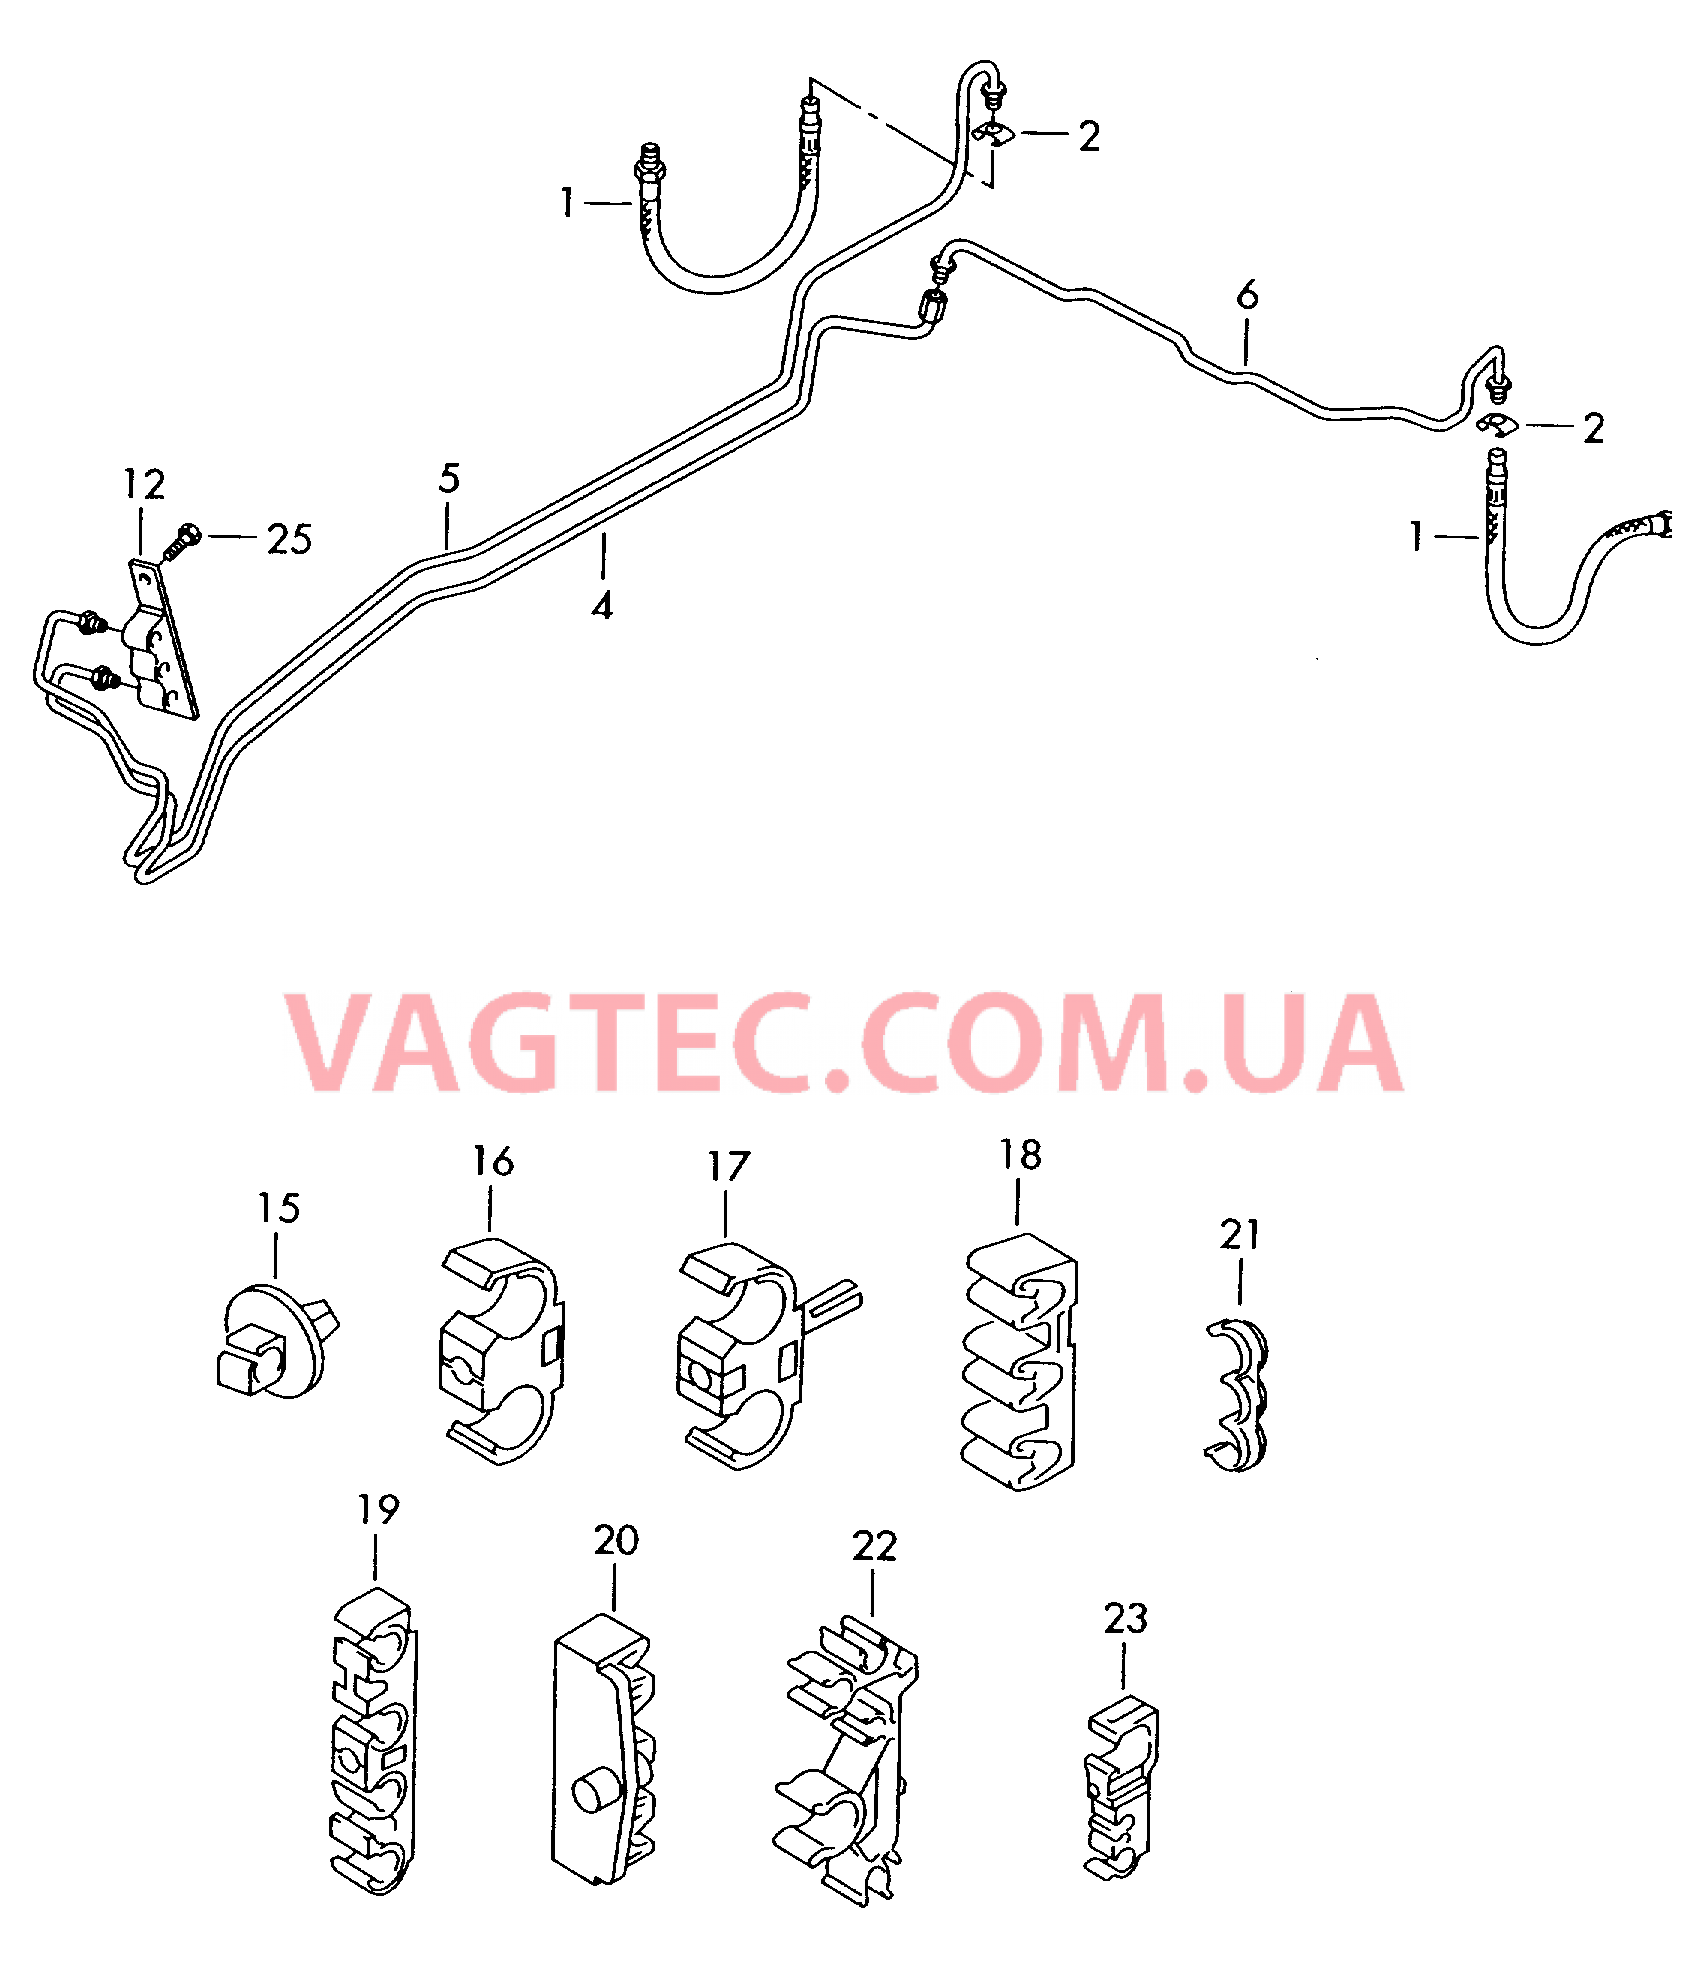 Тормозная трубка Тормозной шланг  для VOLKSWAGEN Touareg 2006